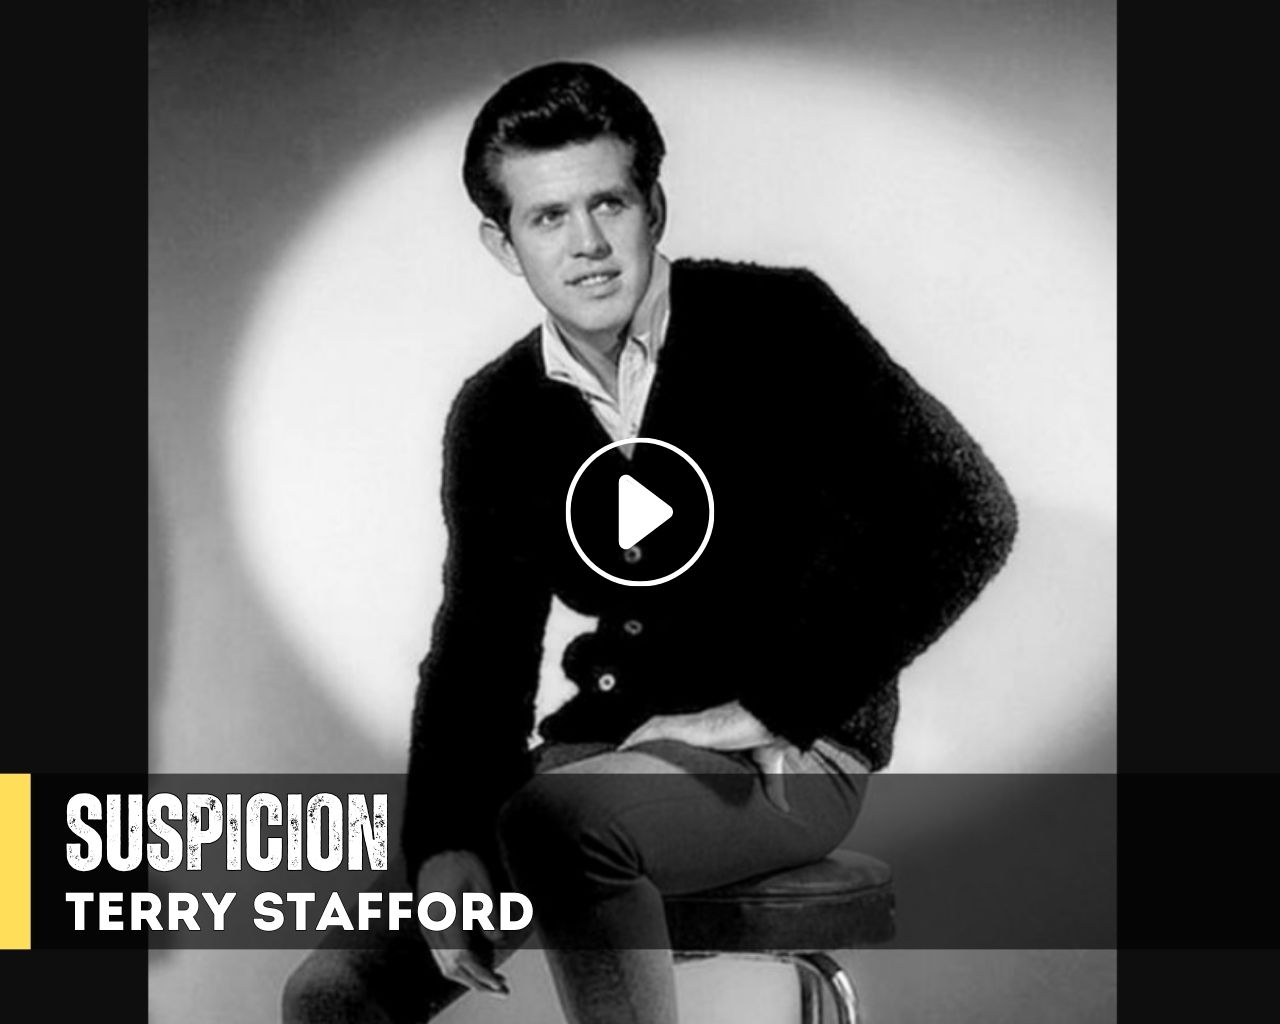 Terry Stafford "Suspicion"